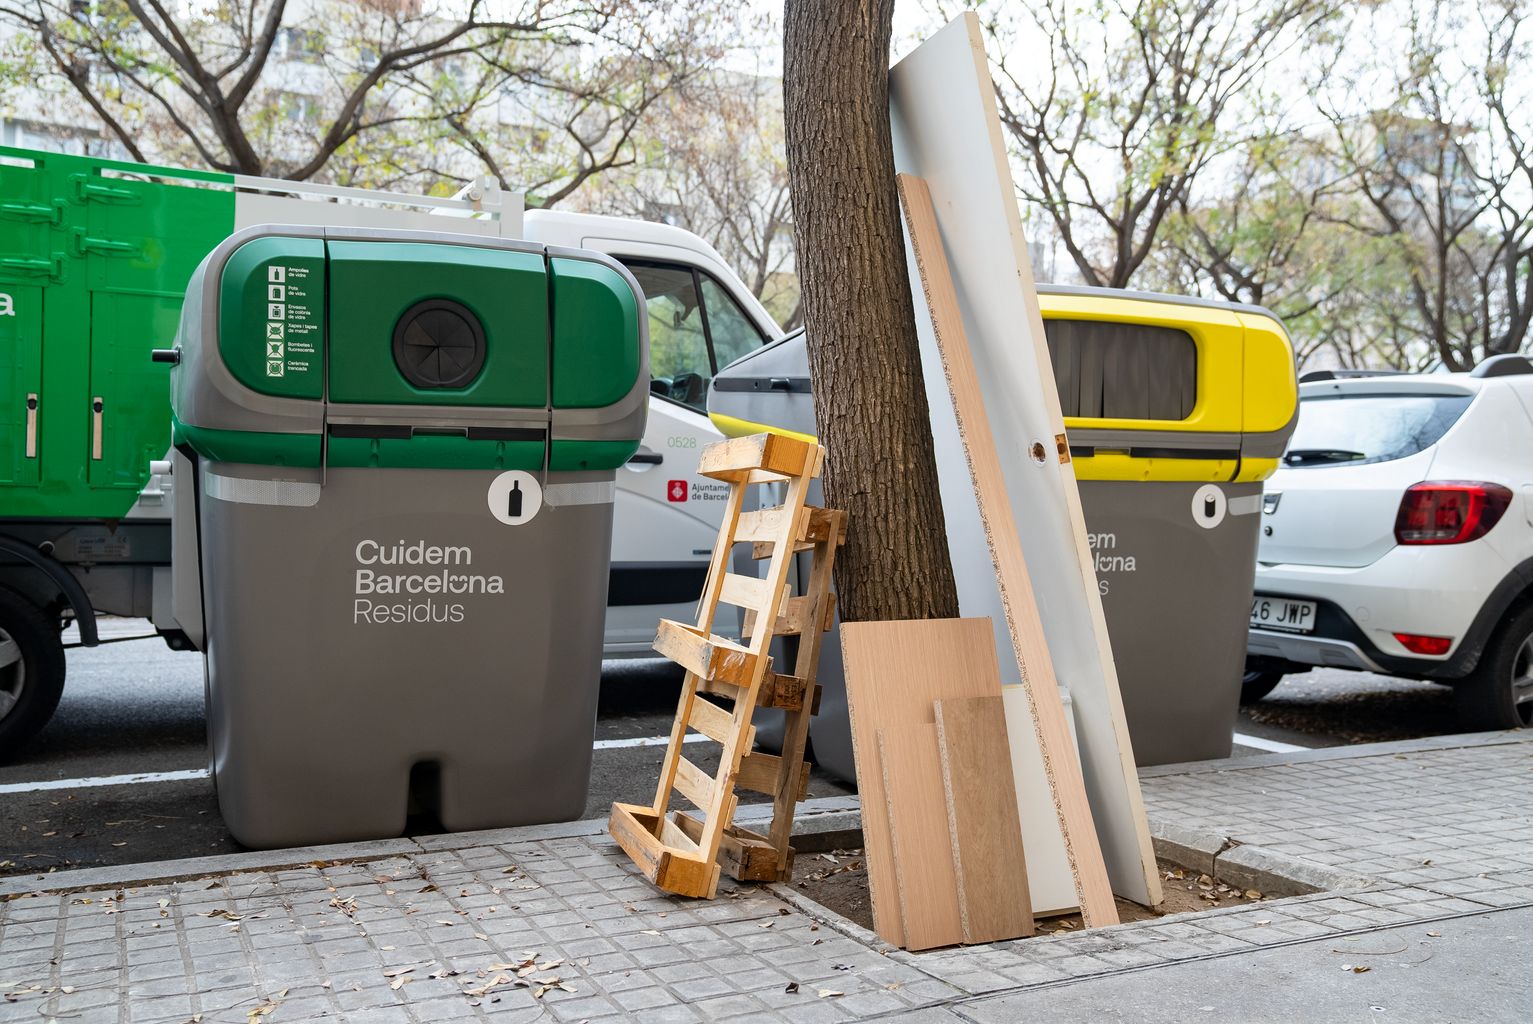 Porta, prestatges i palets de fusta abandonats en un escocell al costat d'uns contenidors de Cuidem Barcelona Residus